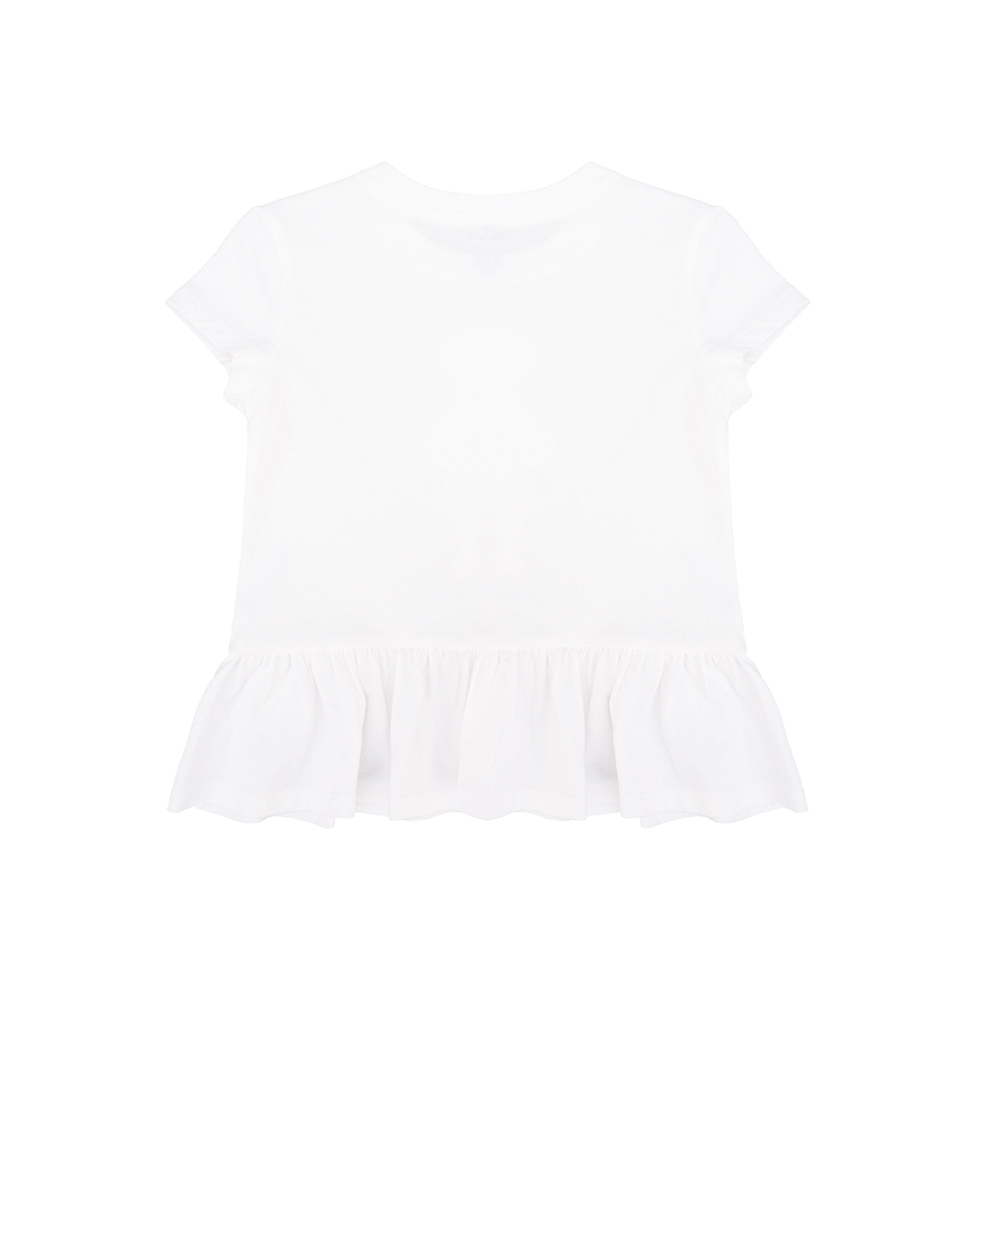 Детская футболка Polo Bear Polo Ralph Lauren Kids 310936235001, белый цвет • Купить в интернет-магазине Kameron